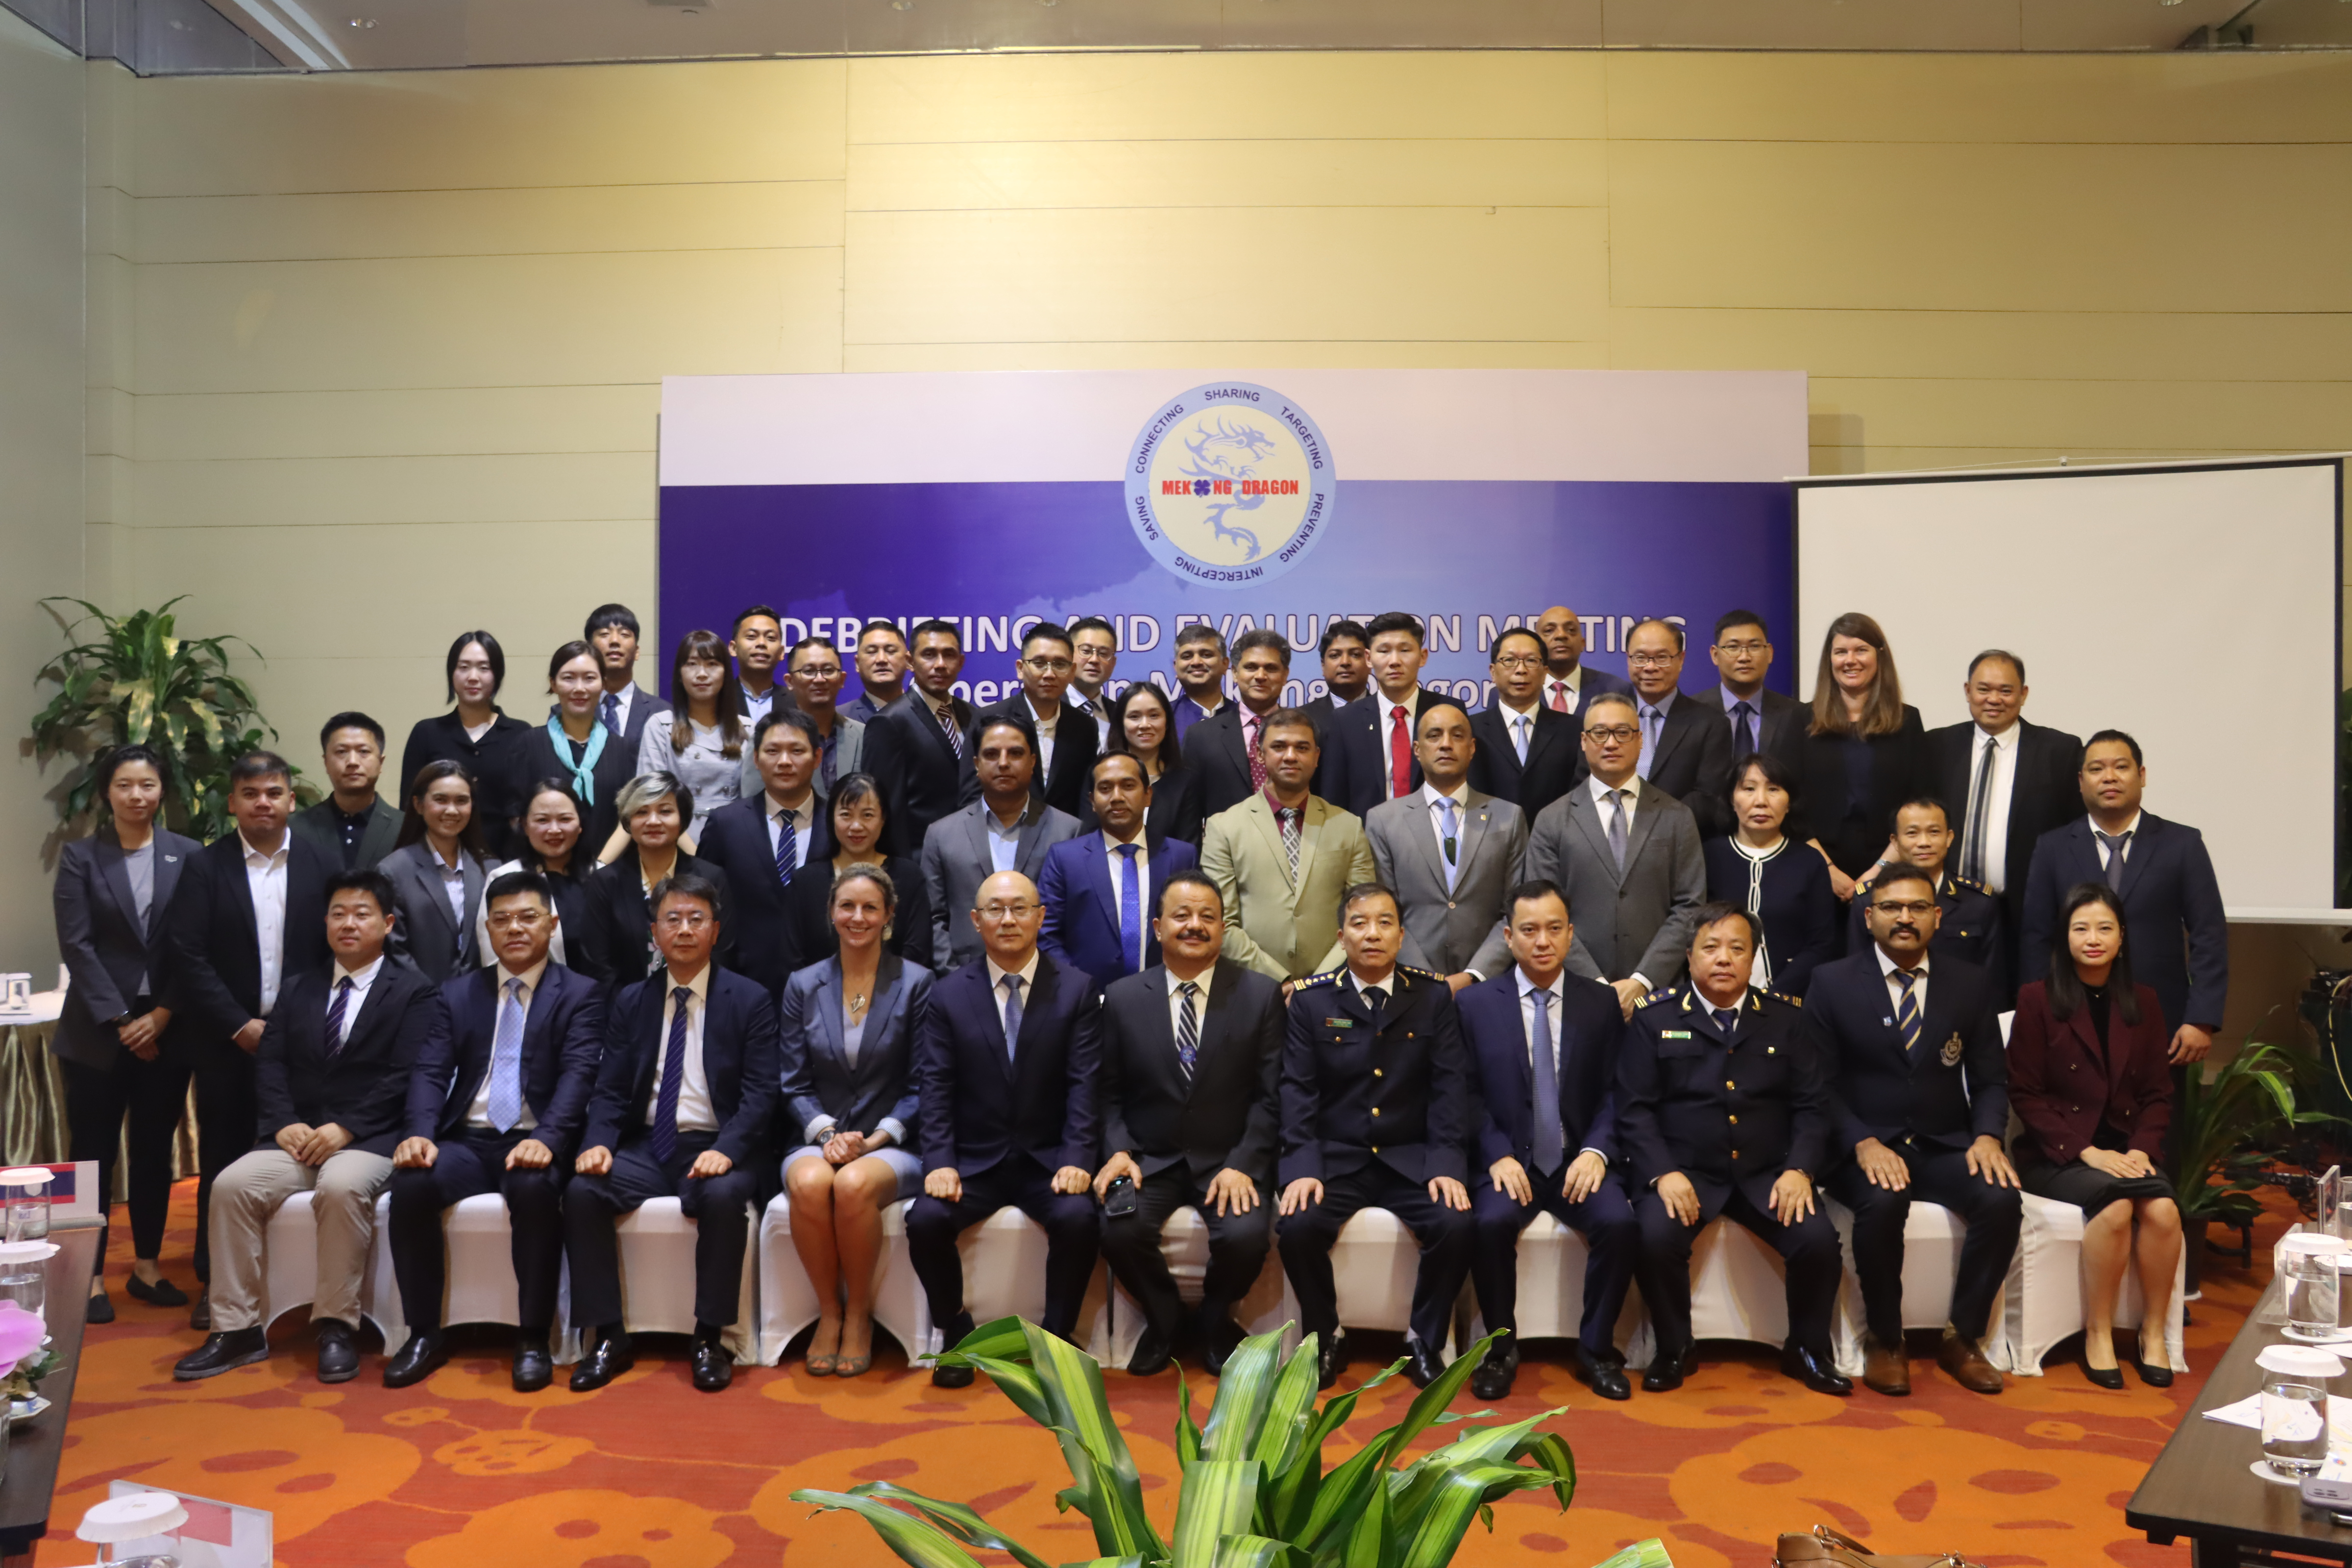 Tổng cục Hải quan đã phối hợp với UNODC tổ chức Hội nghị tổng kết kết quả triển khai Chiến dịch Con rồng Mekong giai đoạn V (gọi tắt là OMD V) tại Hà Nội, Việt Nam - Ảnh: VGP